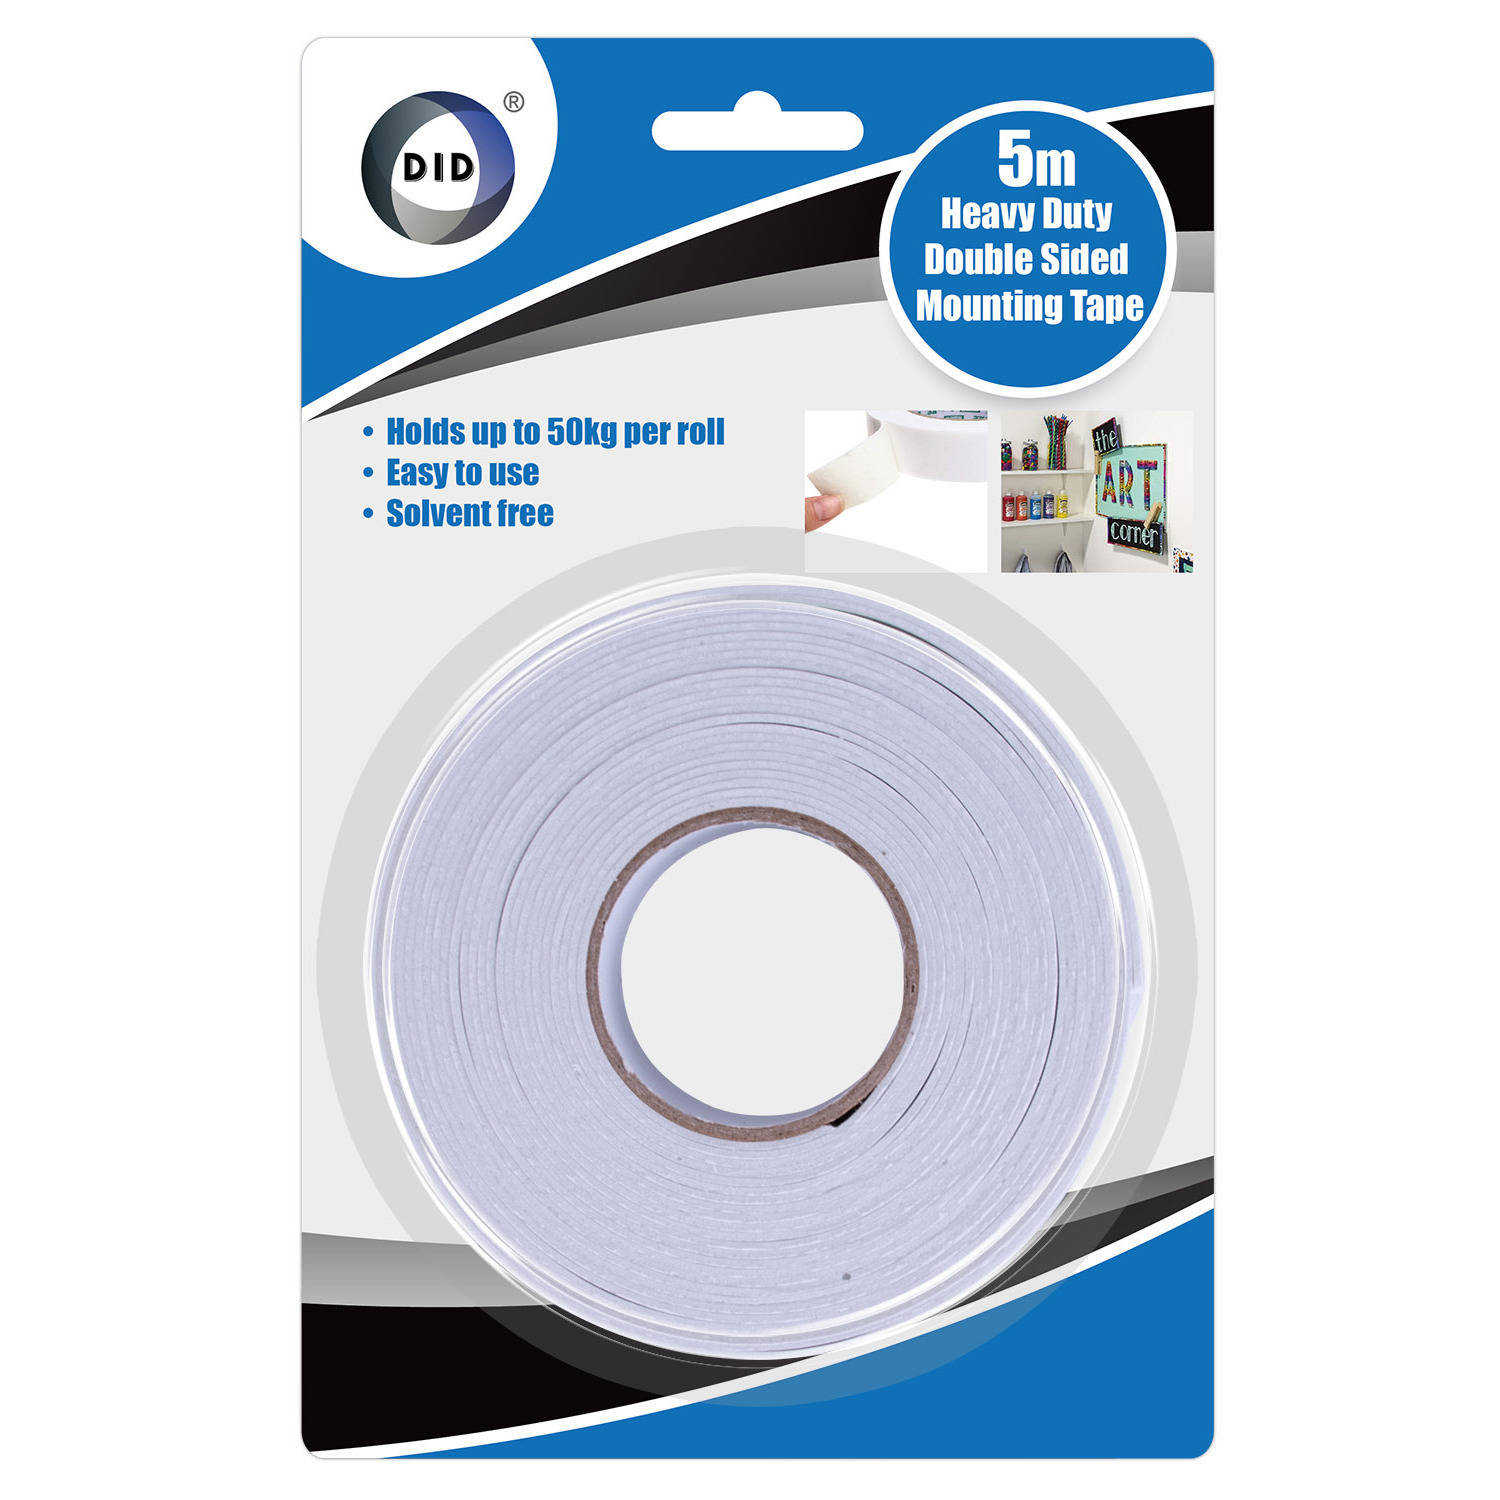 Dubbelzijdig foam tape/plakband 5 meter - 24 mm breed - Tot 50 kg draagvermogen